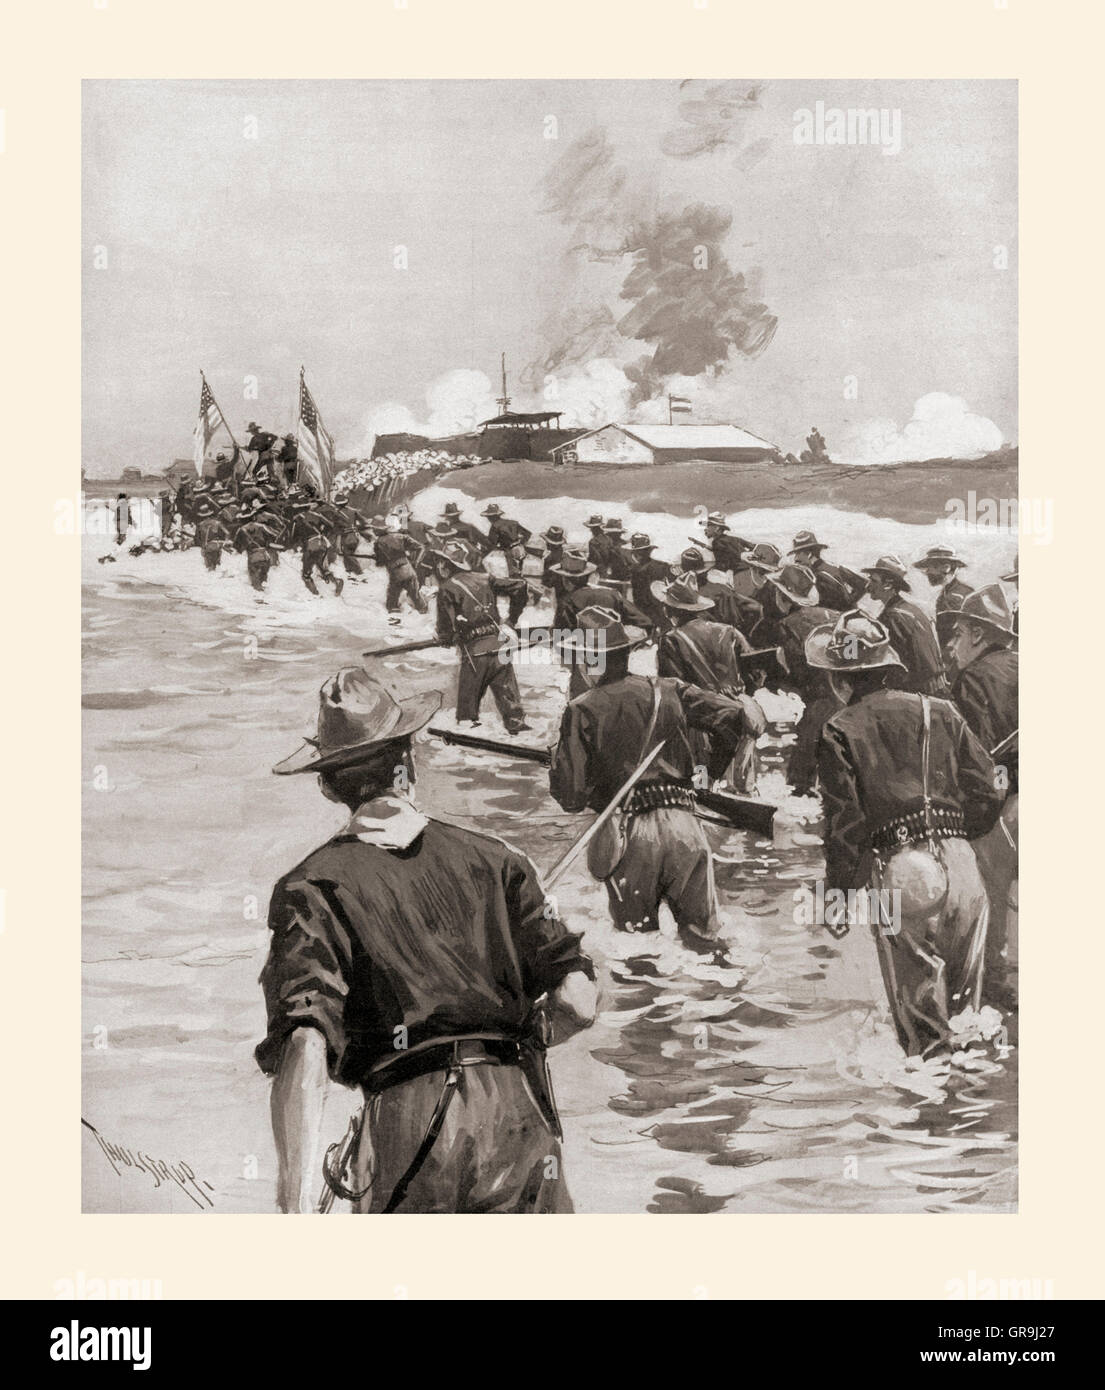 L'attacco a Fort San Antonio Abad alla battaglia di Manila durante la guerra ispano-americana, 1898. Foto Stock